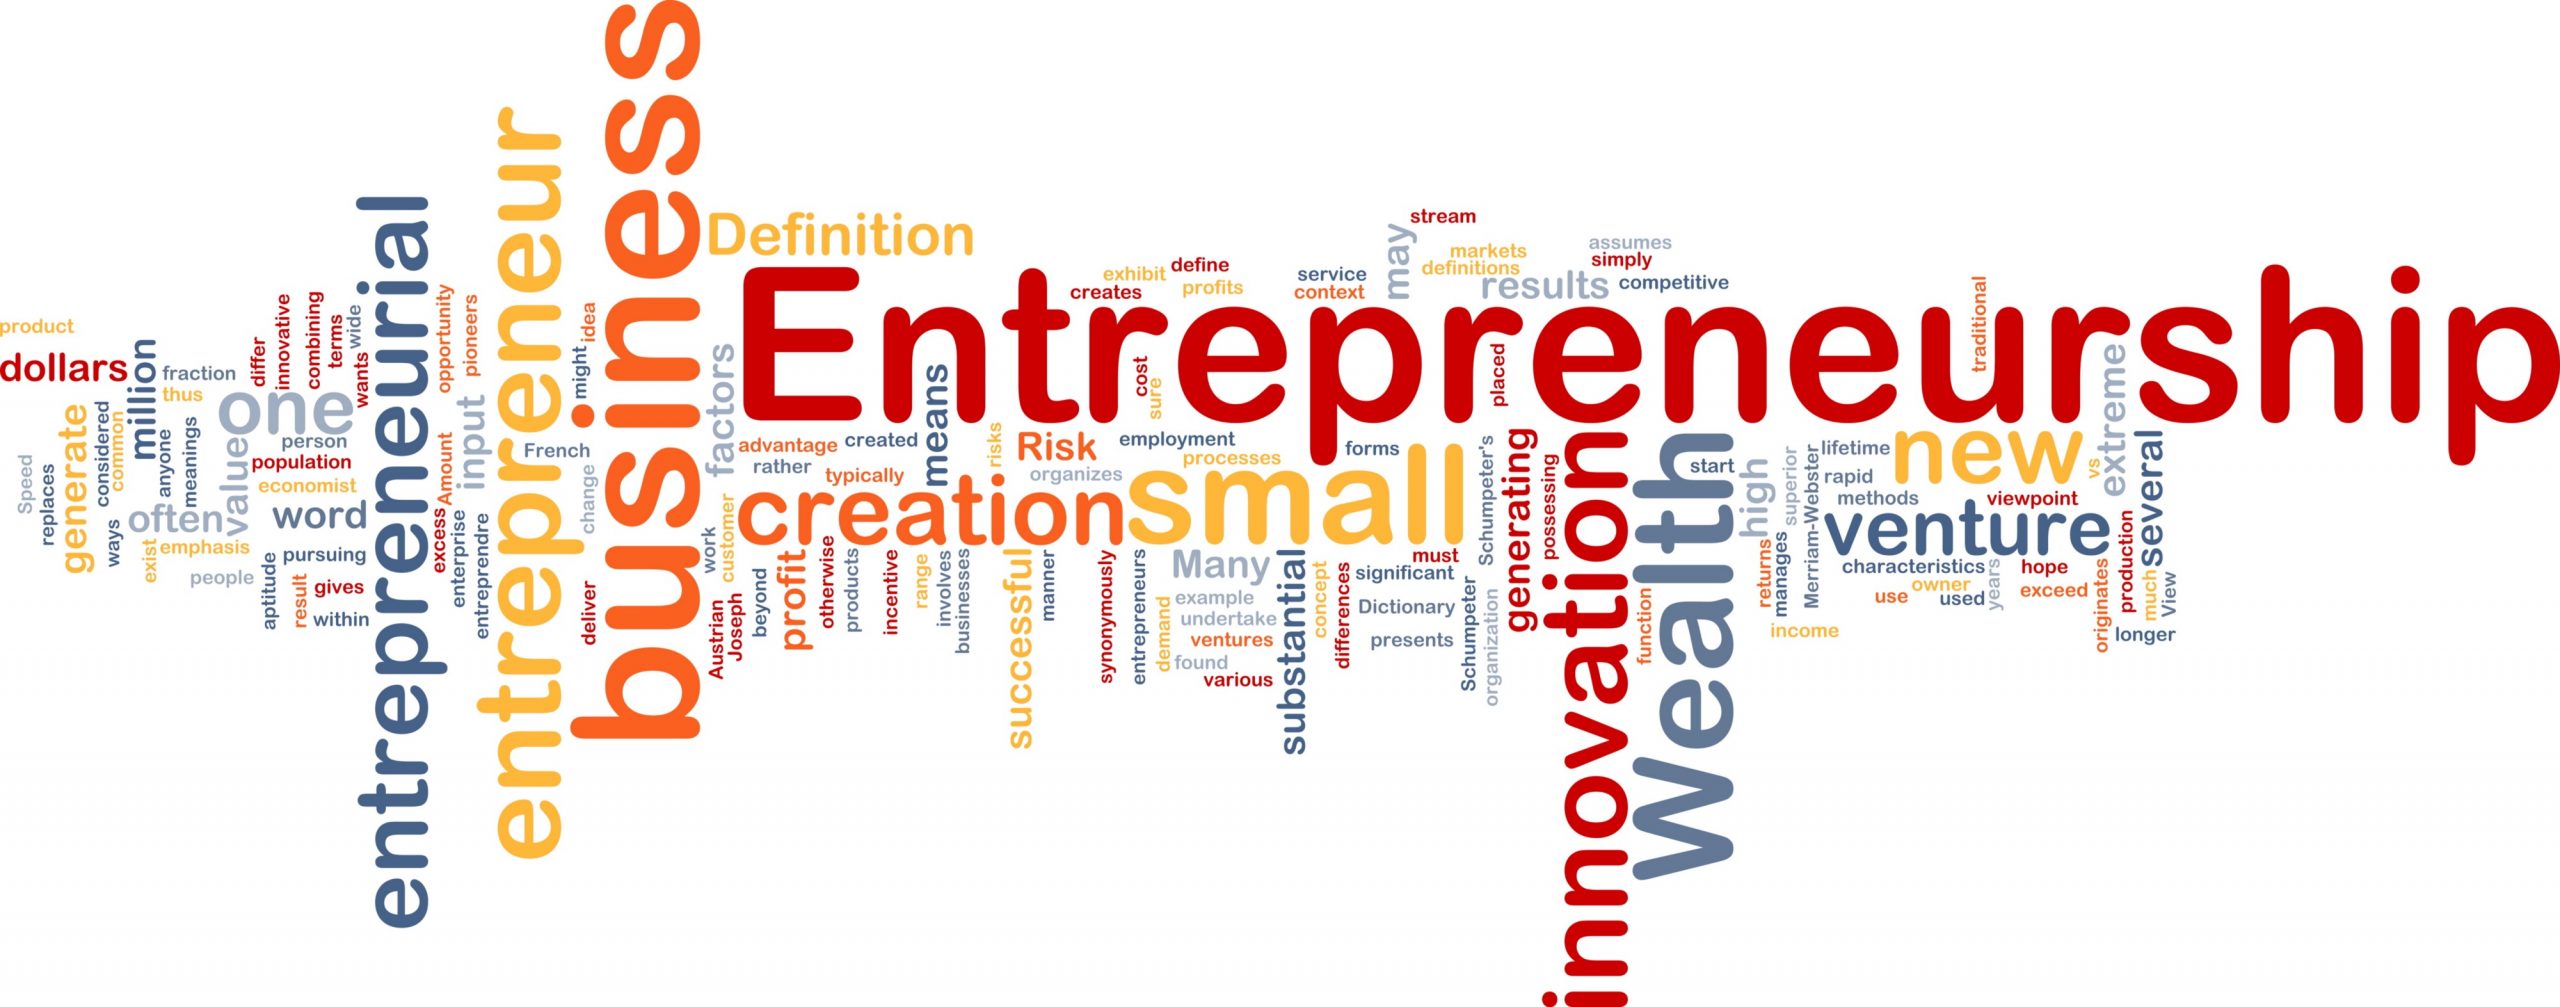 Key To Factors For Entrepreneurship By James Bernard